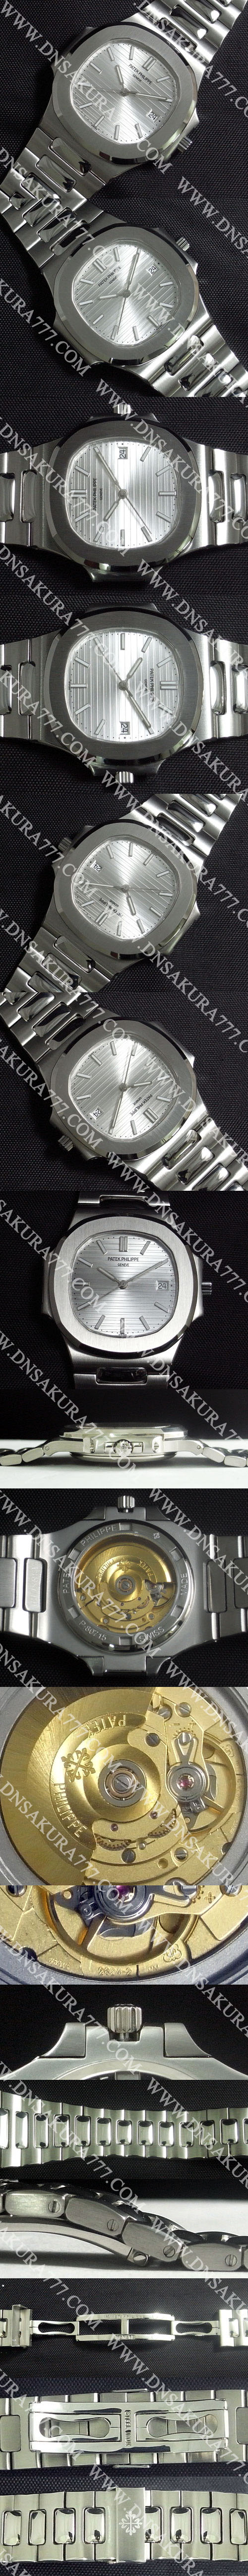 スーパーコピー時計おすすめパテック·フィリップ ノーチラス Swiss ETA社 2824-2 D